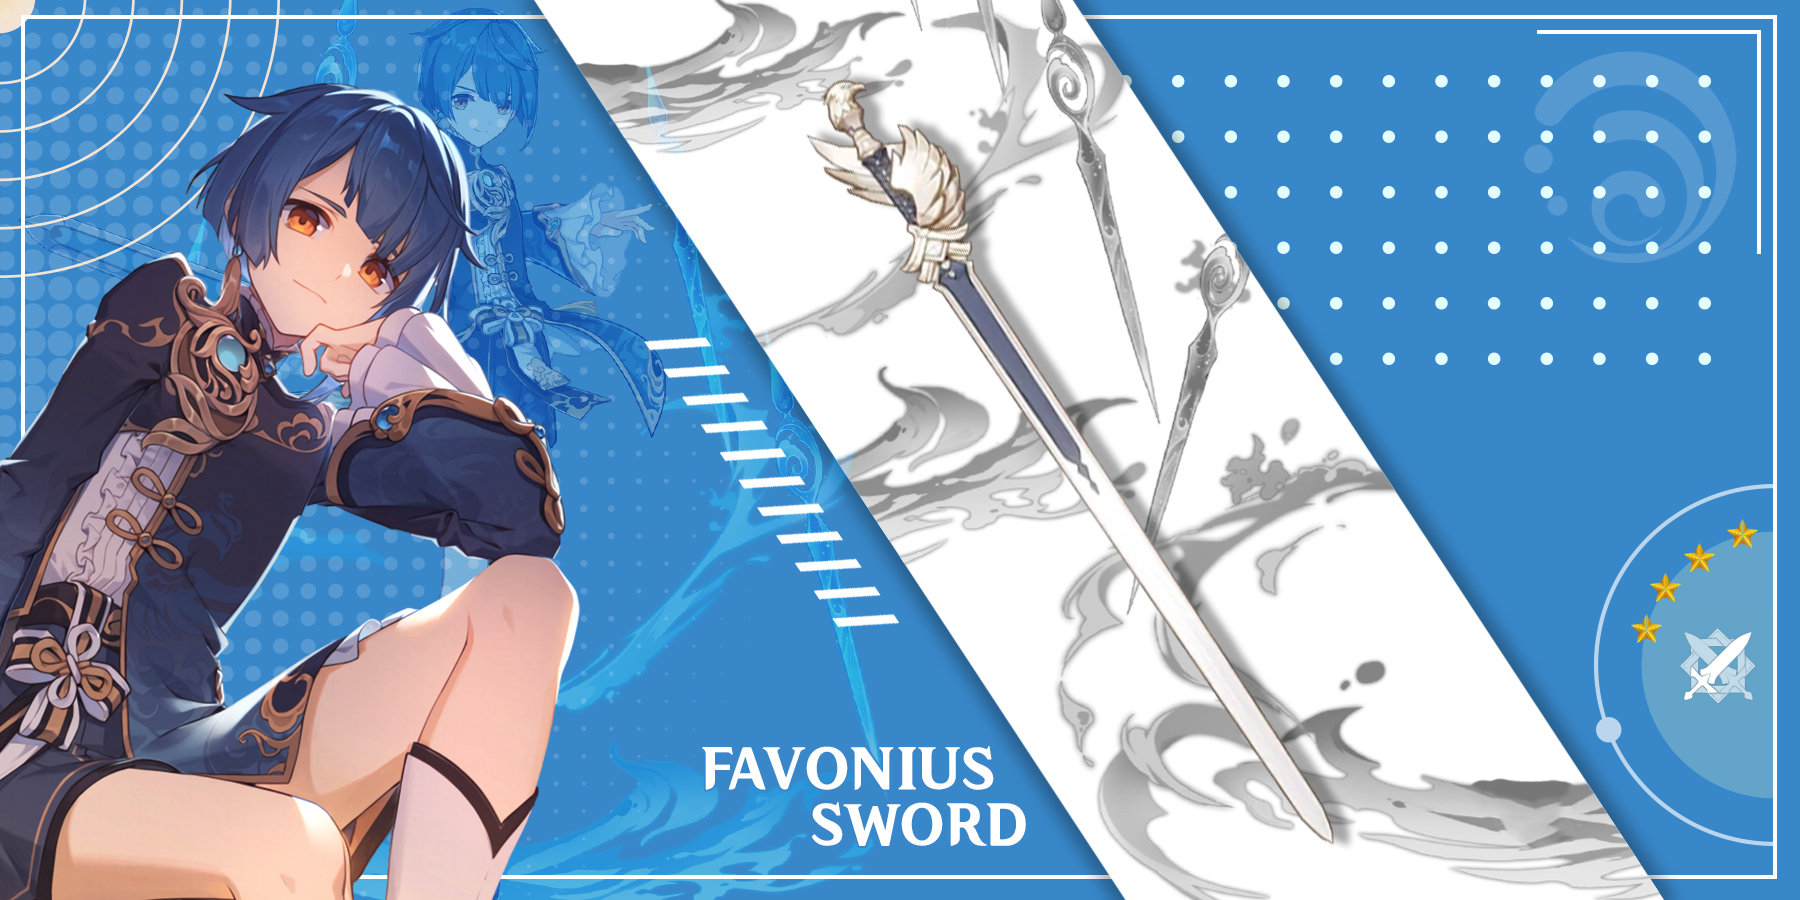 xingqiu-using-favonius-sword-in-genshin-impact